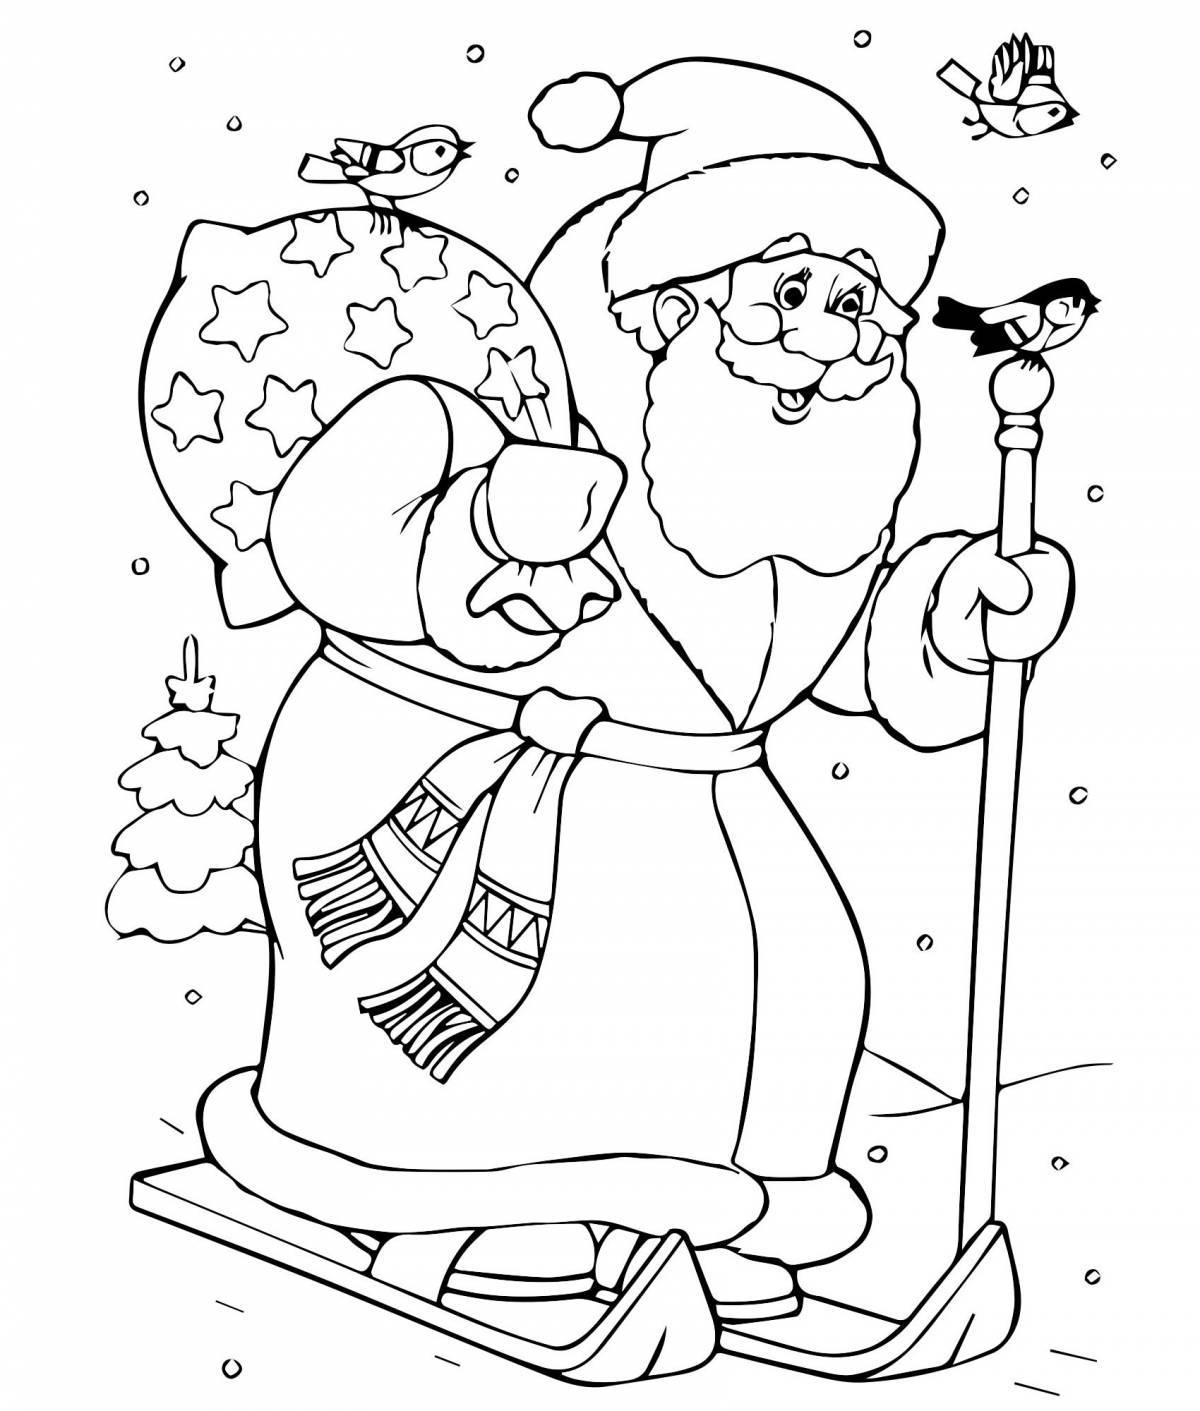 Grand santa claus coloring book